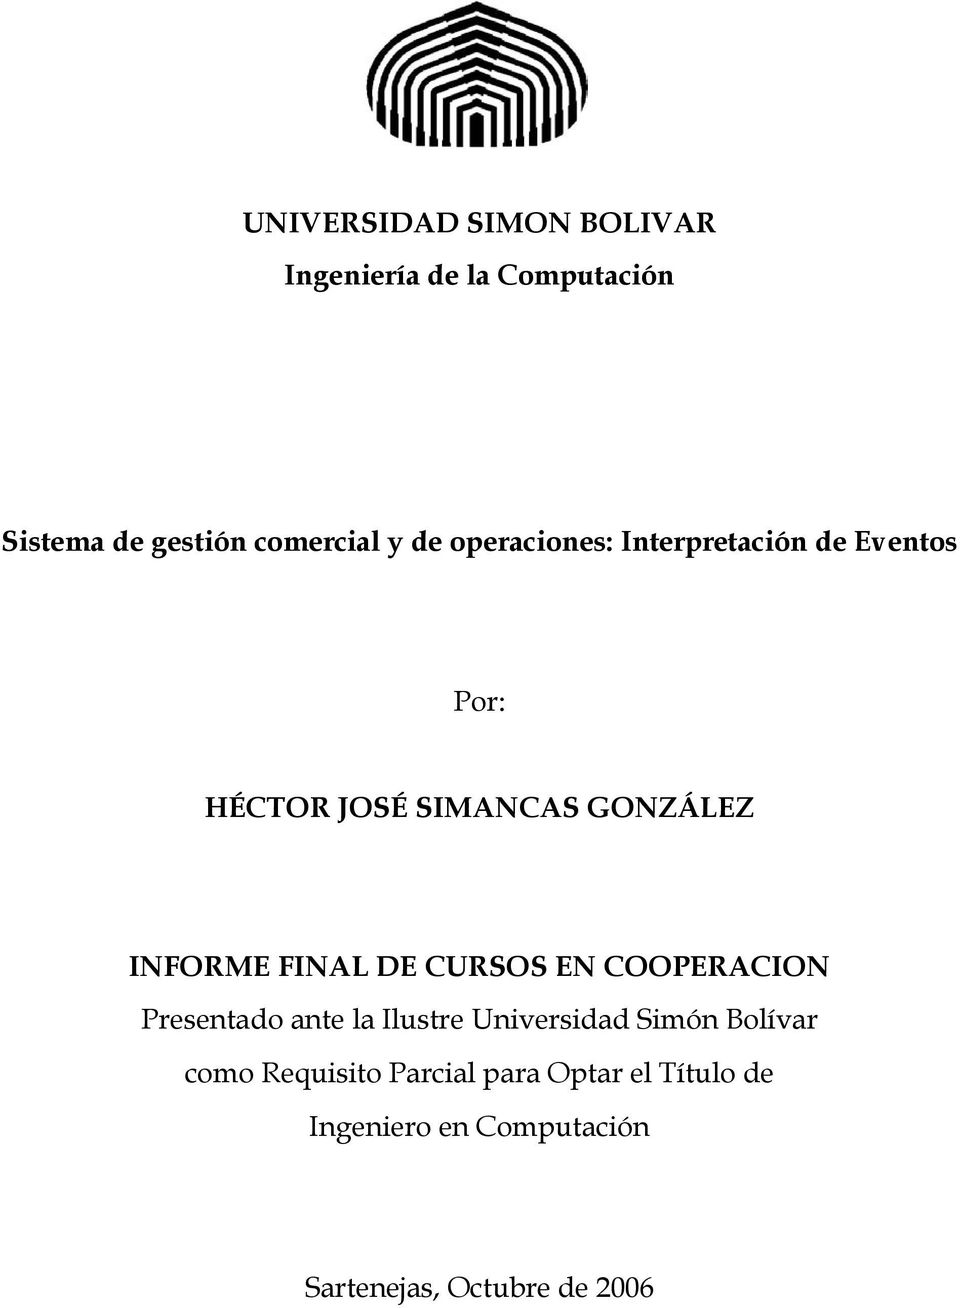 FINAL DE CURSOS EN COOPERACION Presentado ante la Ilustre Universidad Simón Bolívar como